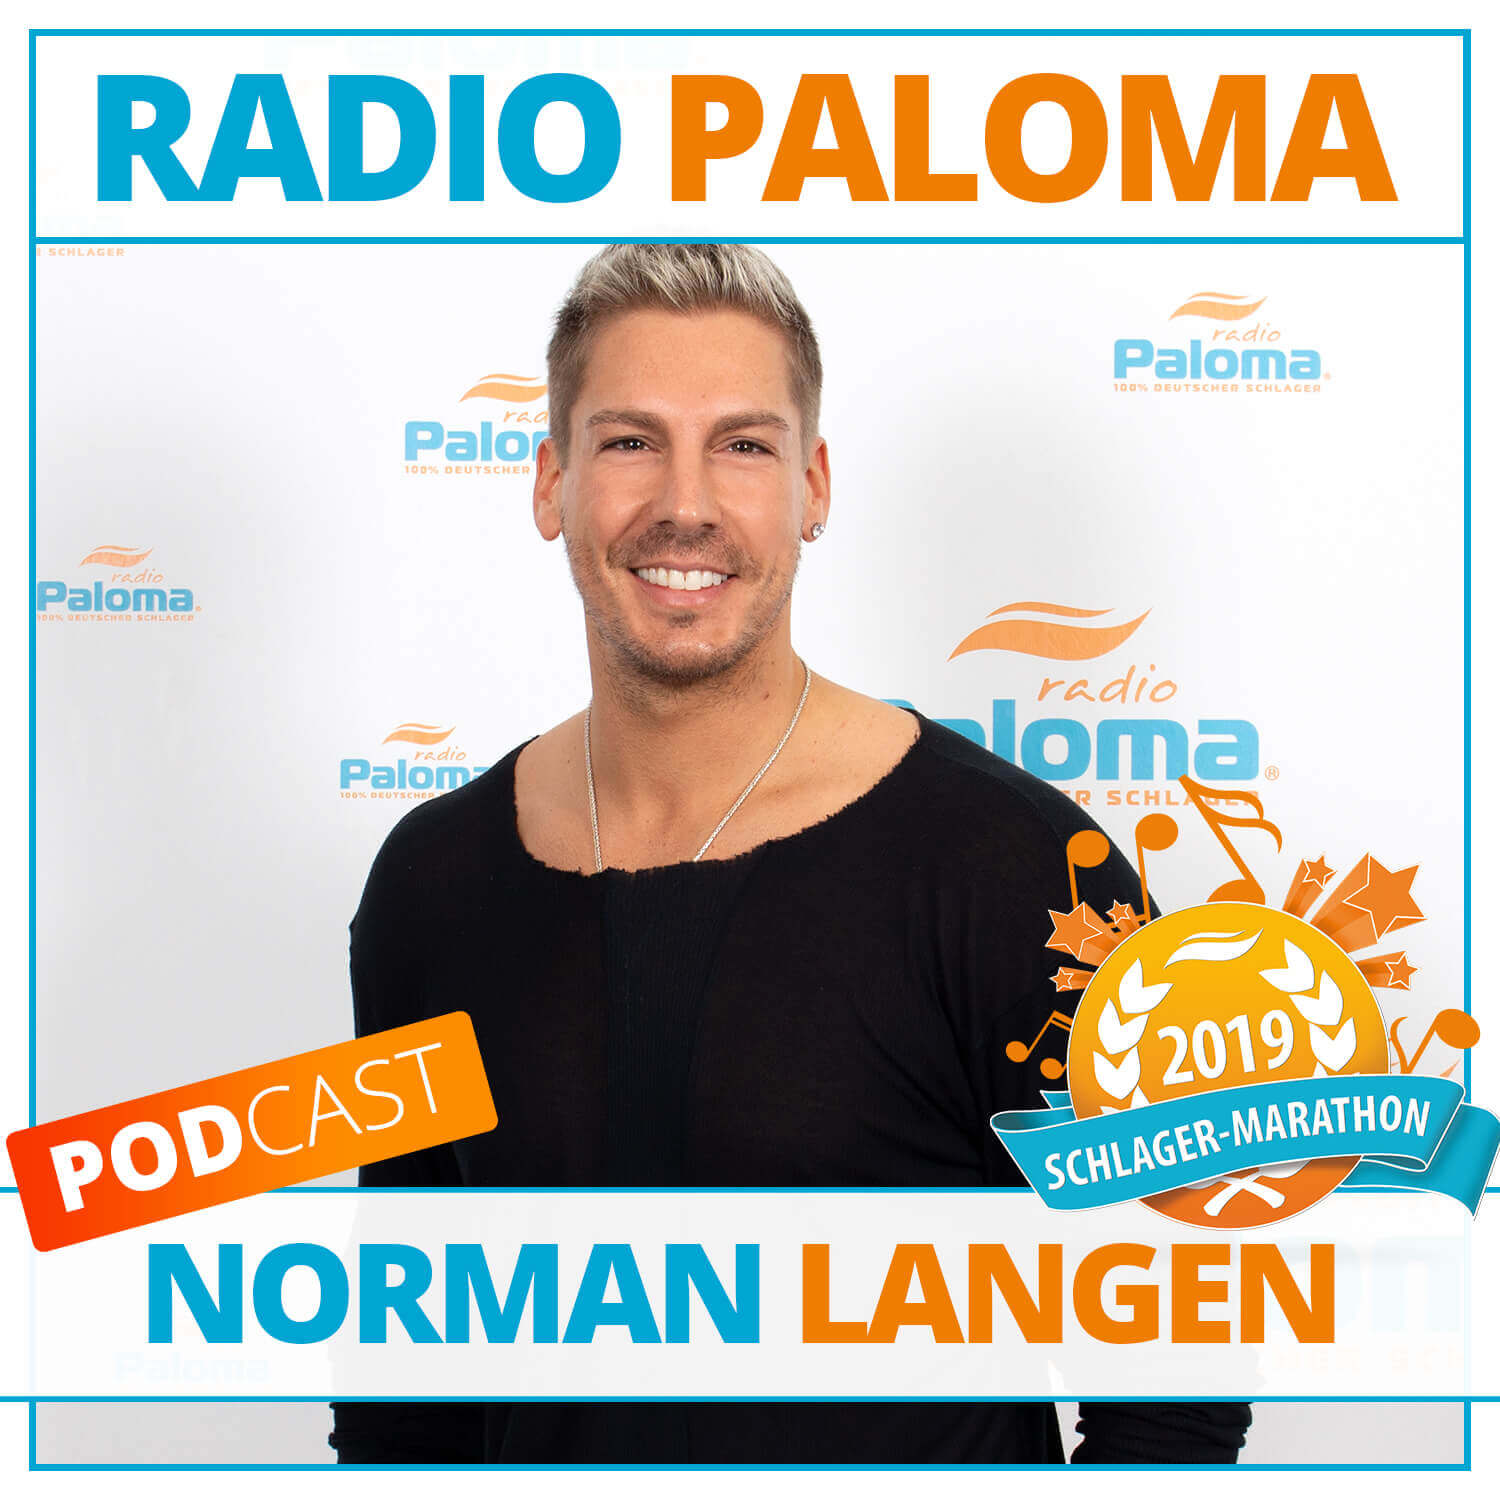 Der Radio Paloma Schlager-Marathon 2019 mit Norman Langen